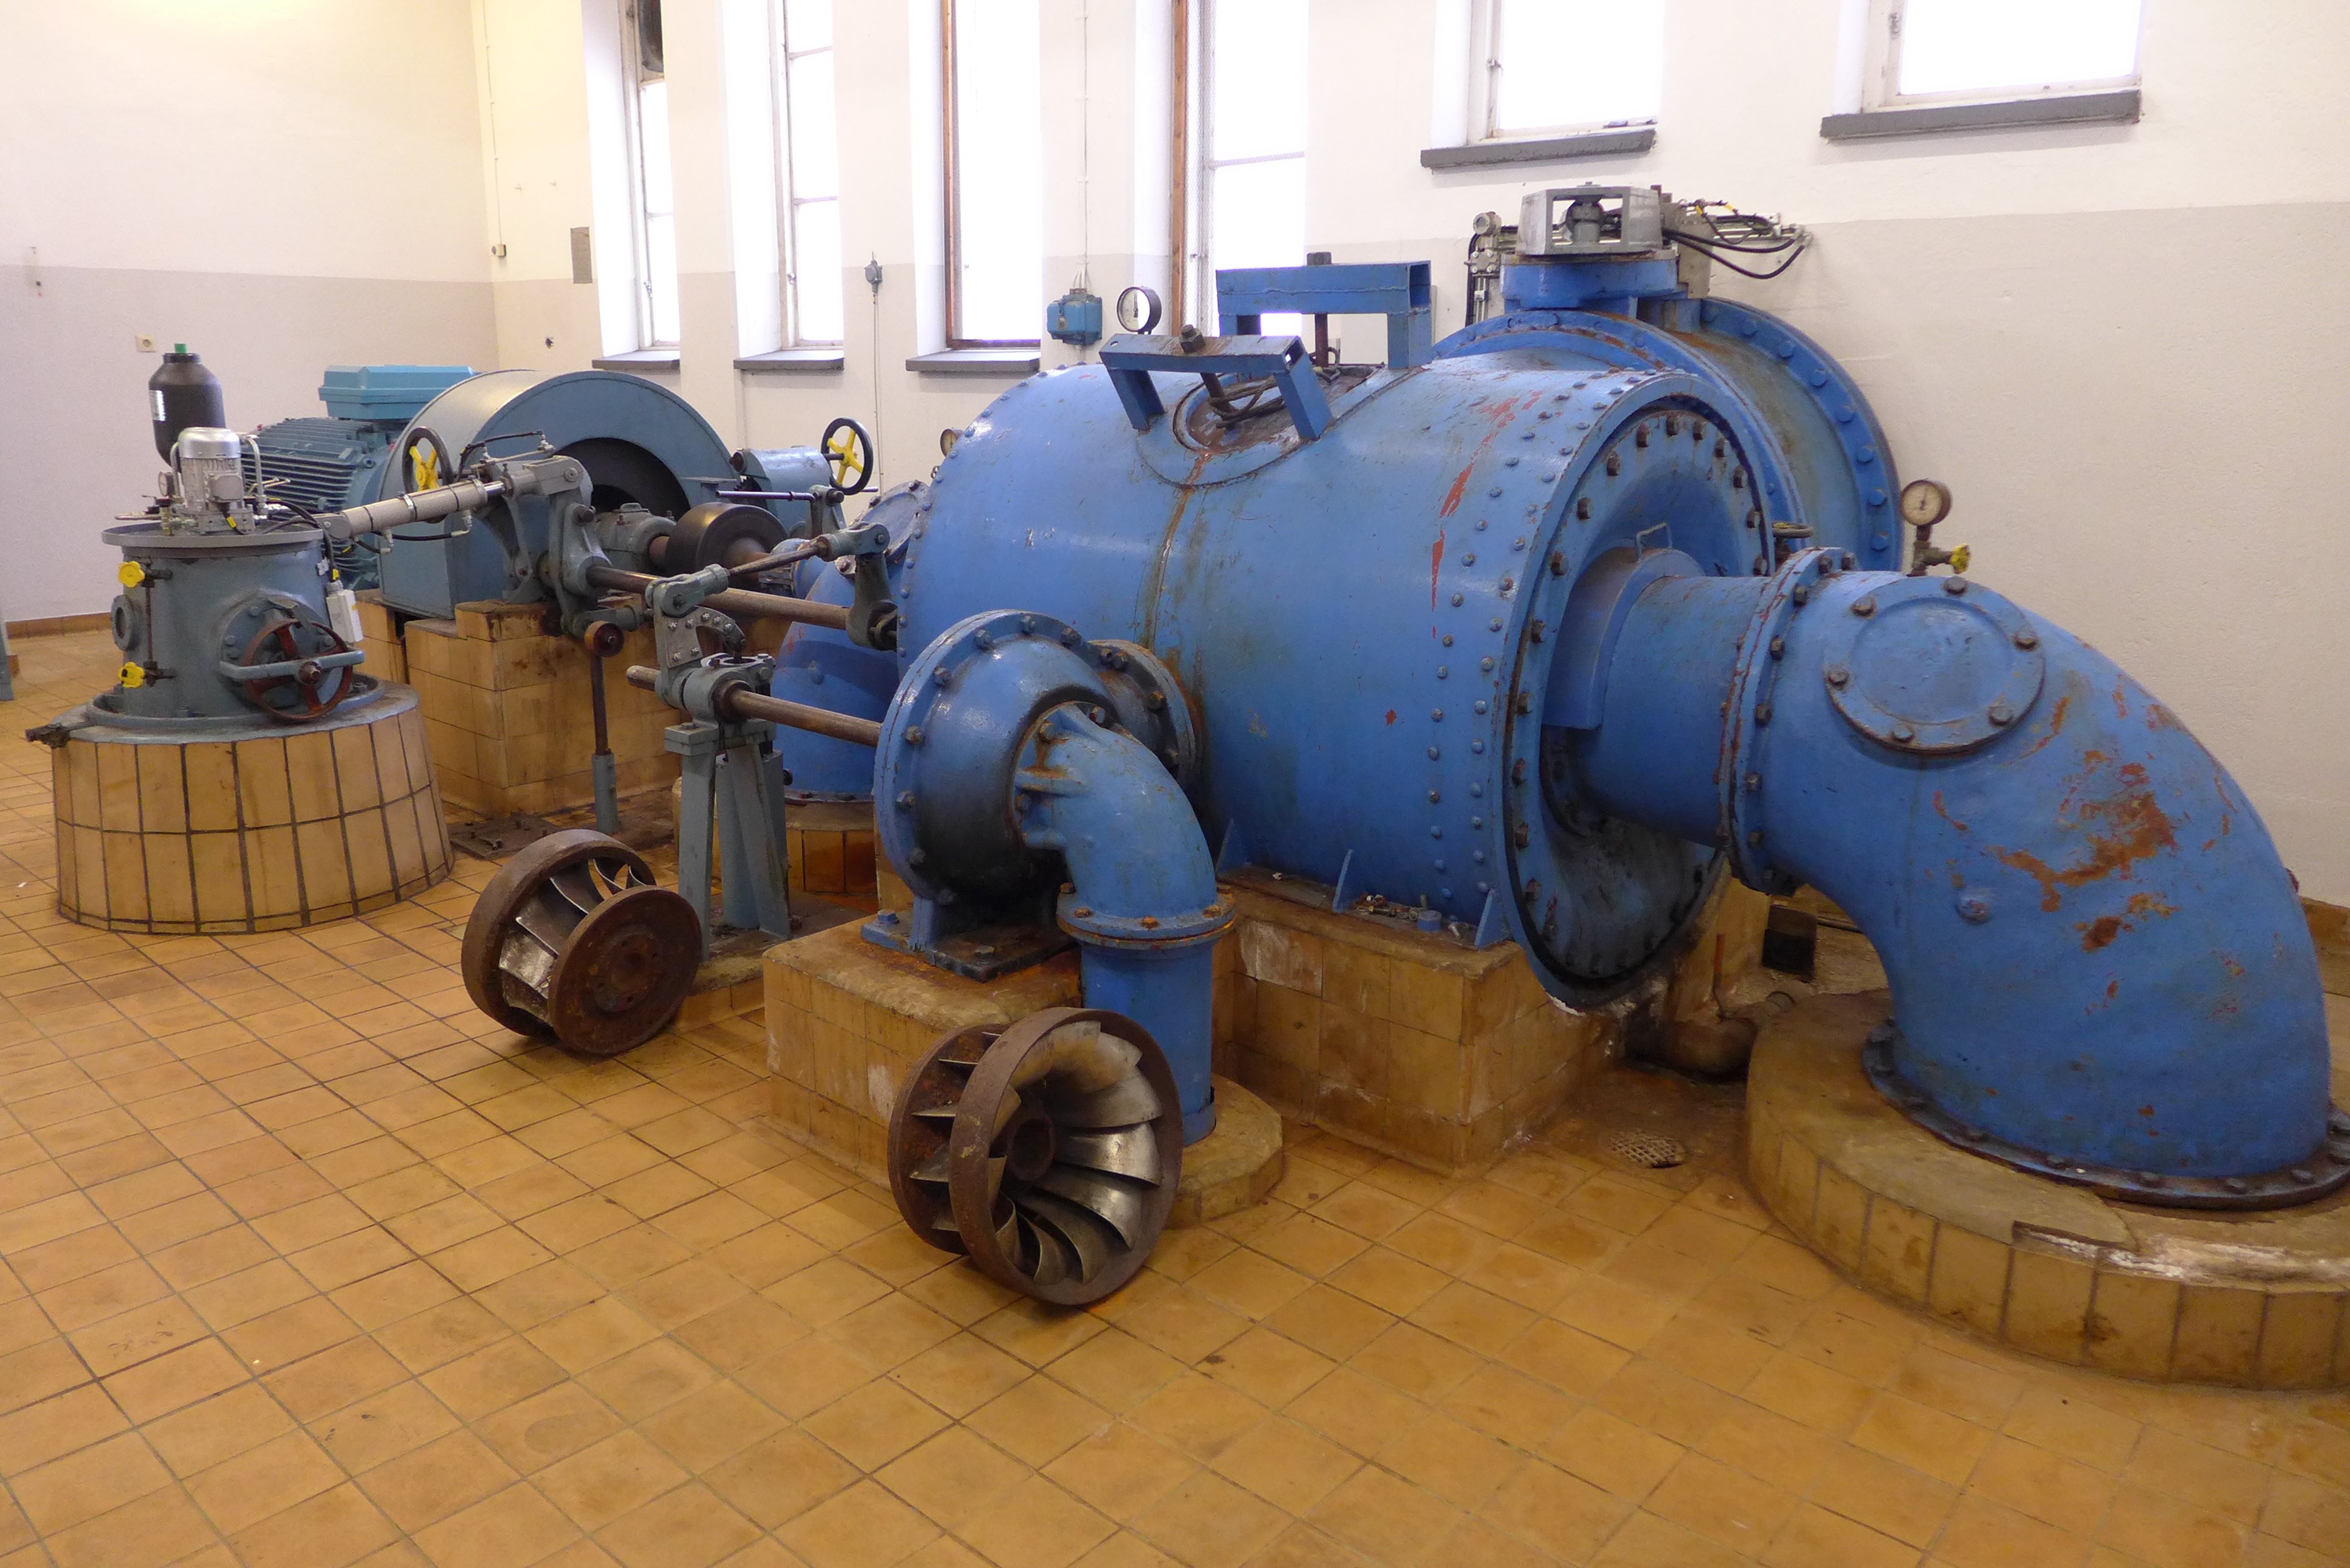 Kraftverkets turbin är en dubbelfrancis innesluten i ett cylindriskt tryckskåp. Turbinen är tillverkad av Hällarydsverken – troligen 1948. Generatorn är en asynkron ABB-motor av modernt slag. Den gamla generatorn är bevarad inne på bruket. 